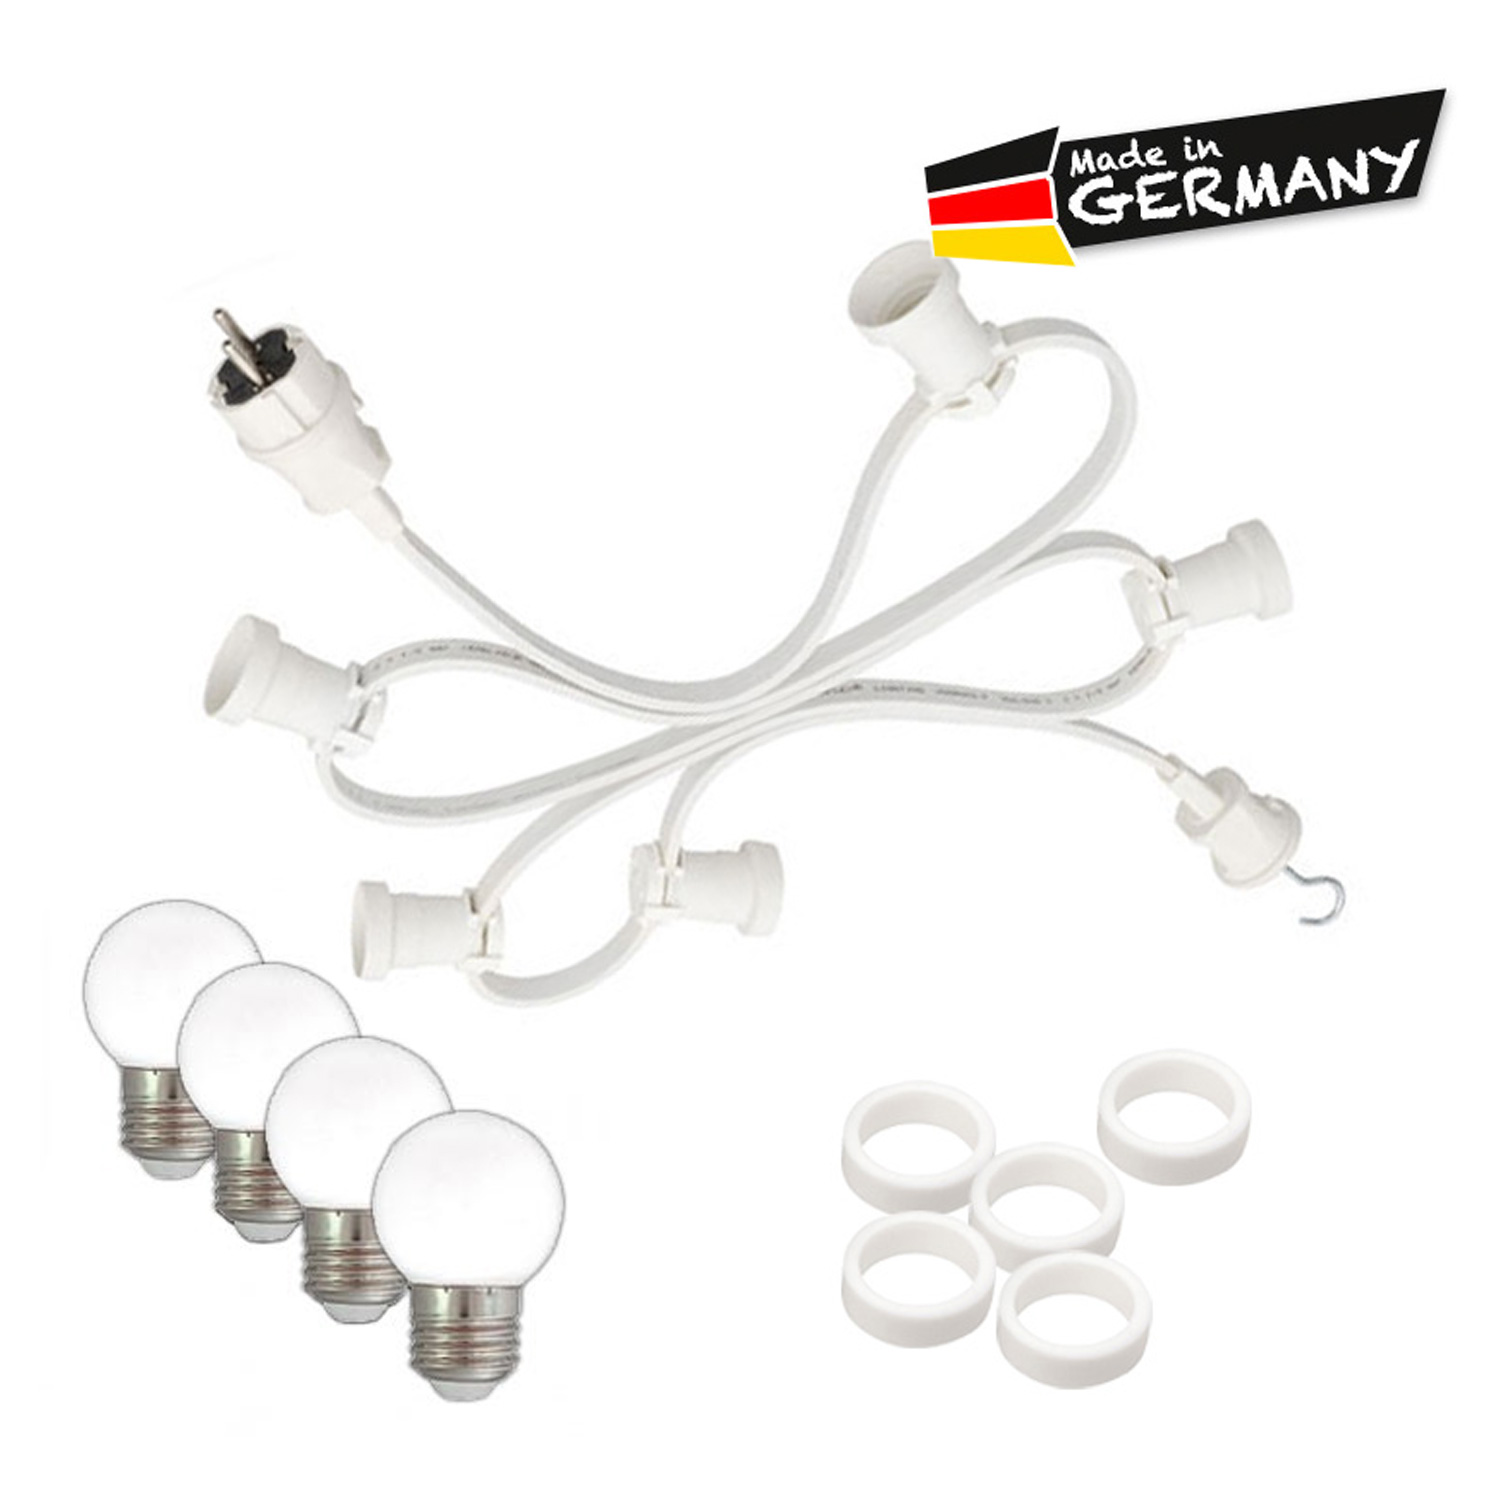 Illu-/Partylichterkette 40m - Außenlichterkette - Made in Germany - 40 x warmweiße LED Kugellampen